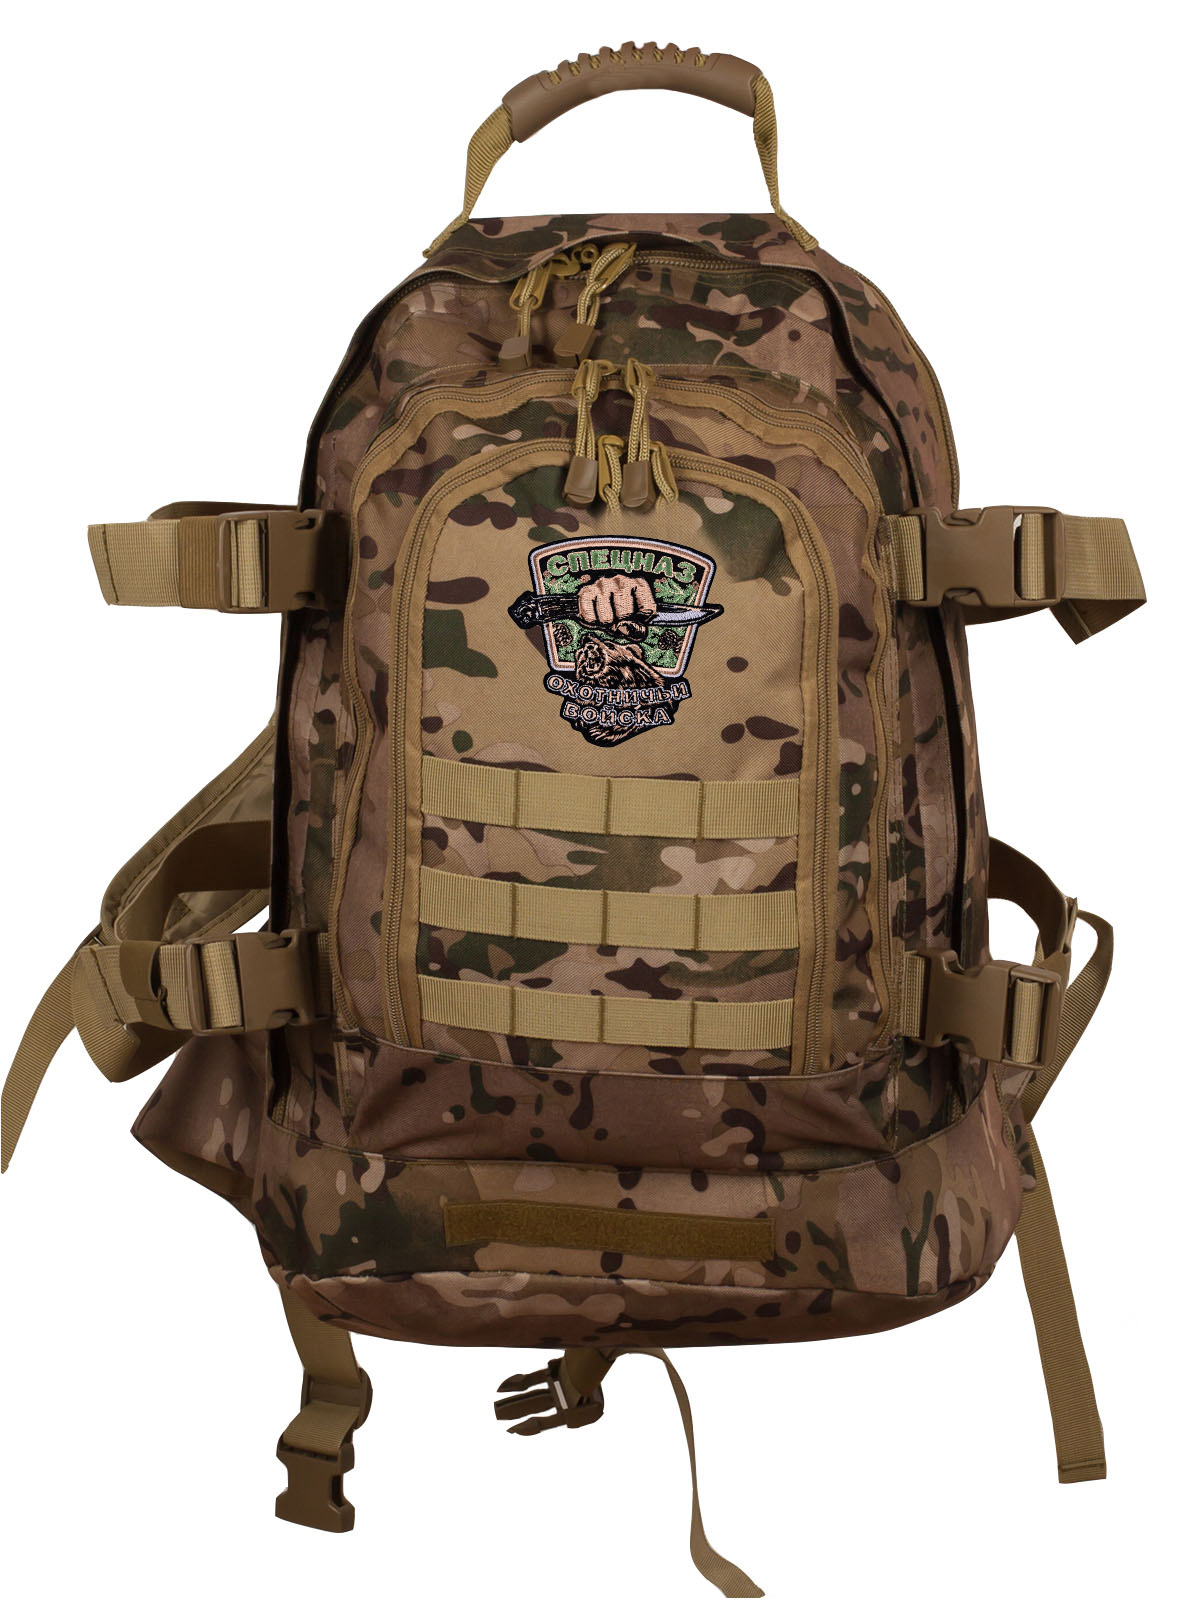 Камуфляжный тактический рюкзак с шевроном Охотничьего спецназа купить онлайн